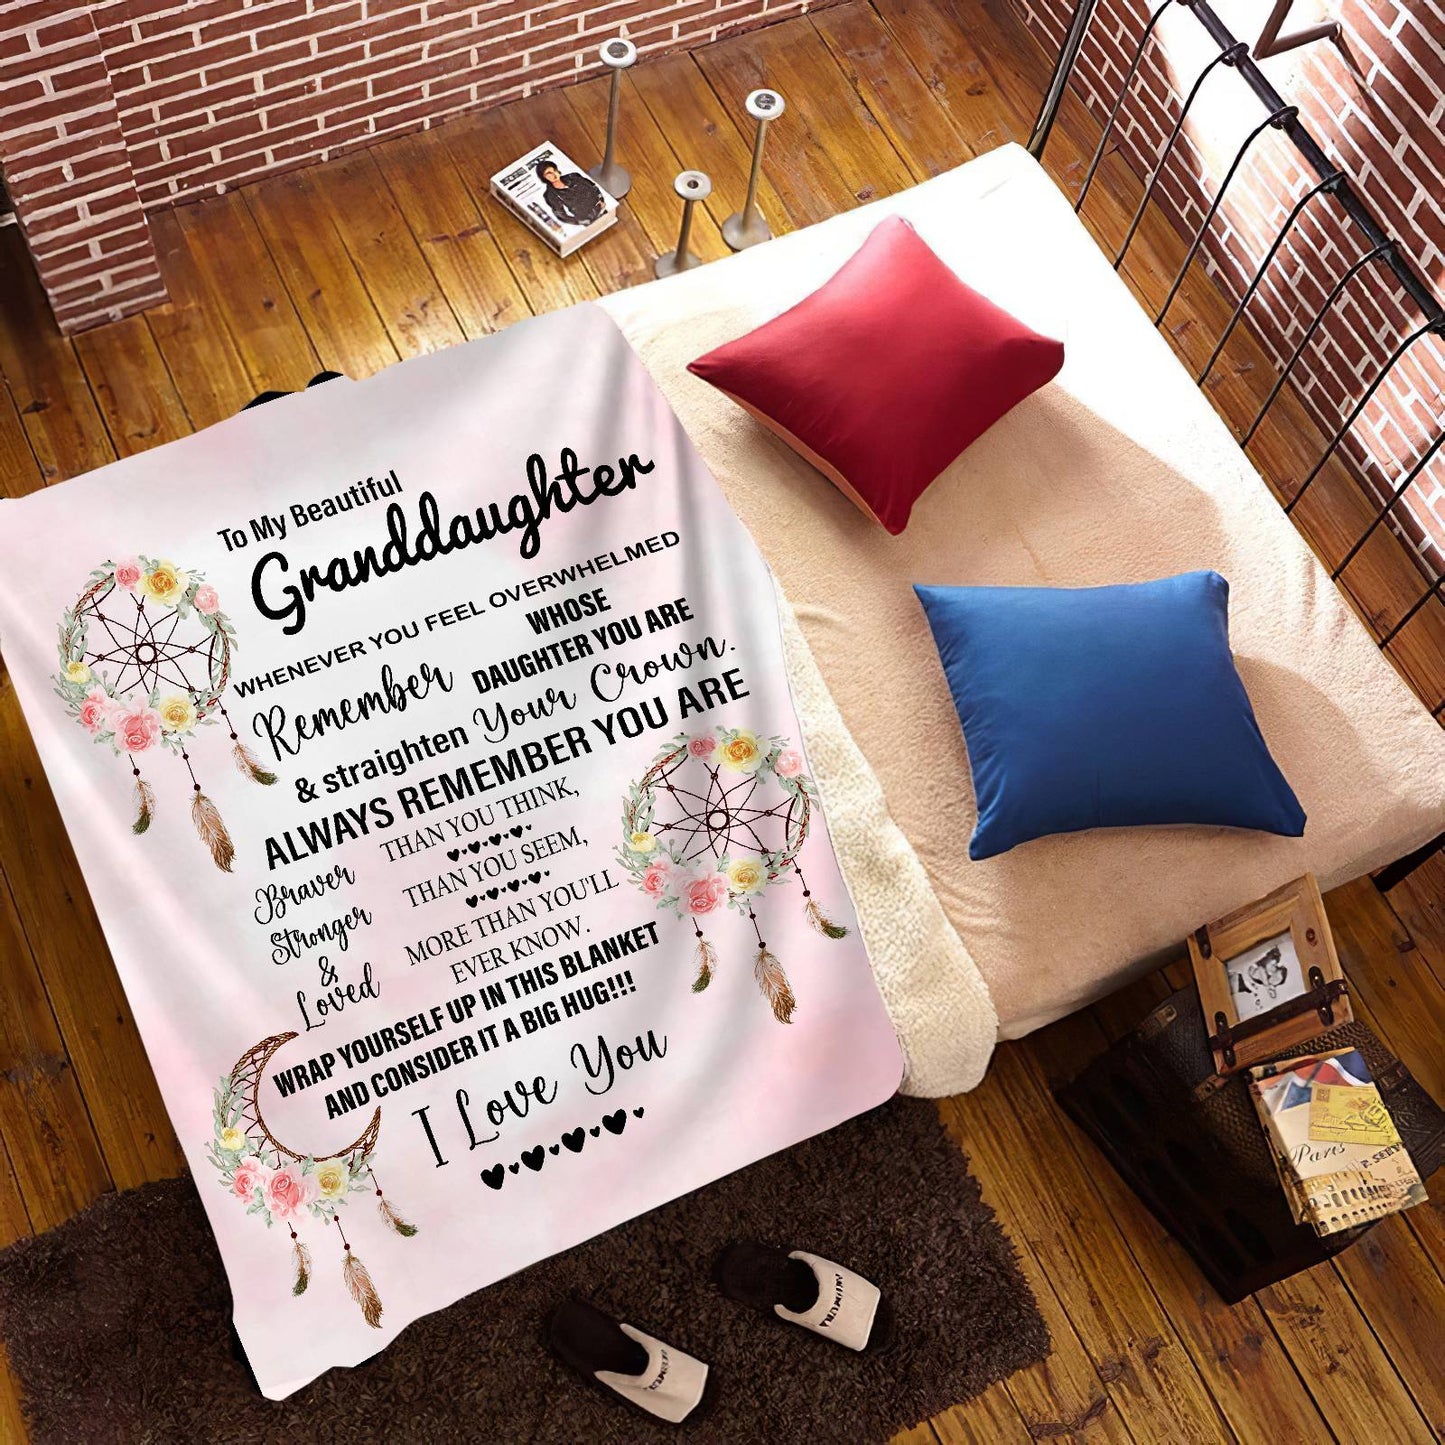 Granddaughter Dreamcatchers Cozy Message Blanket